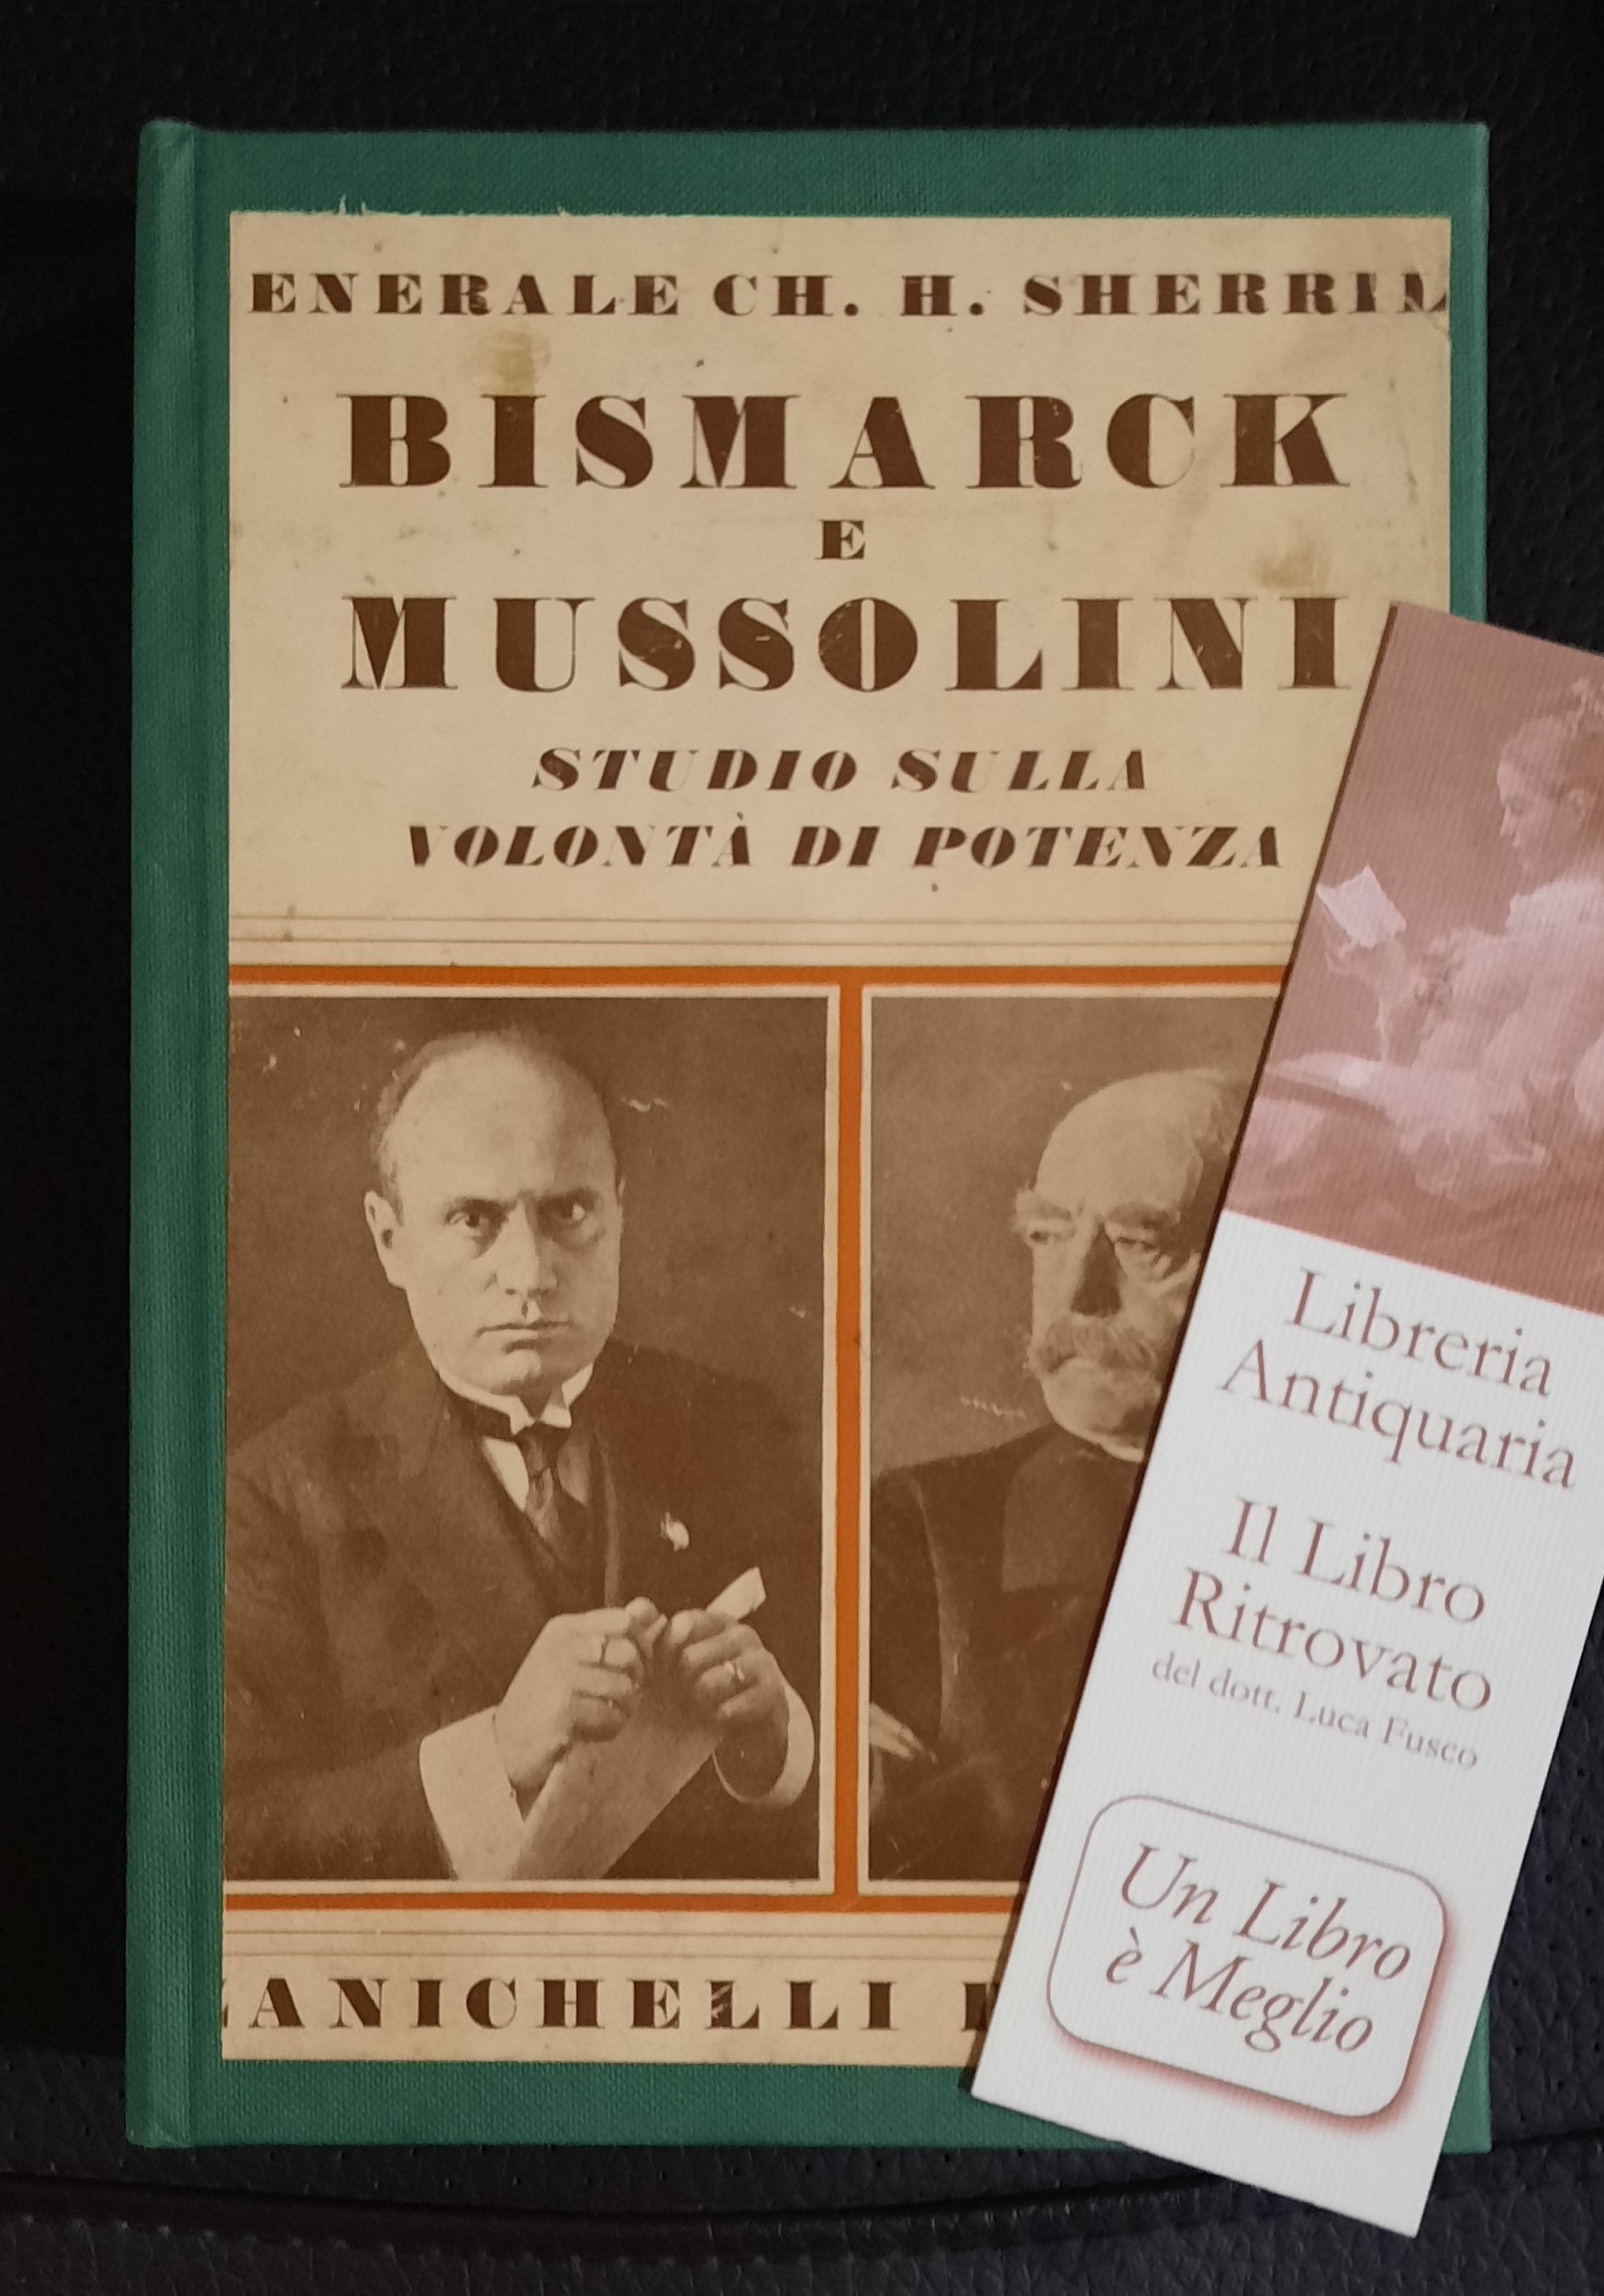 Bismarck e Mussolini.